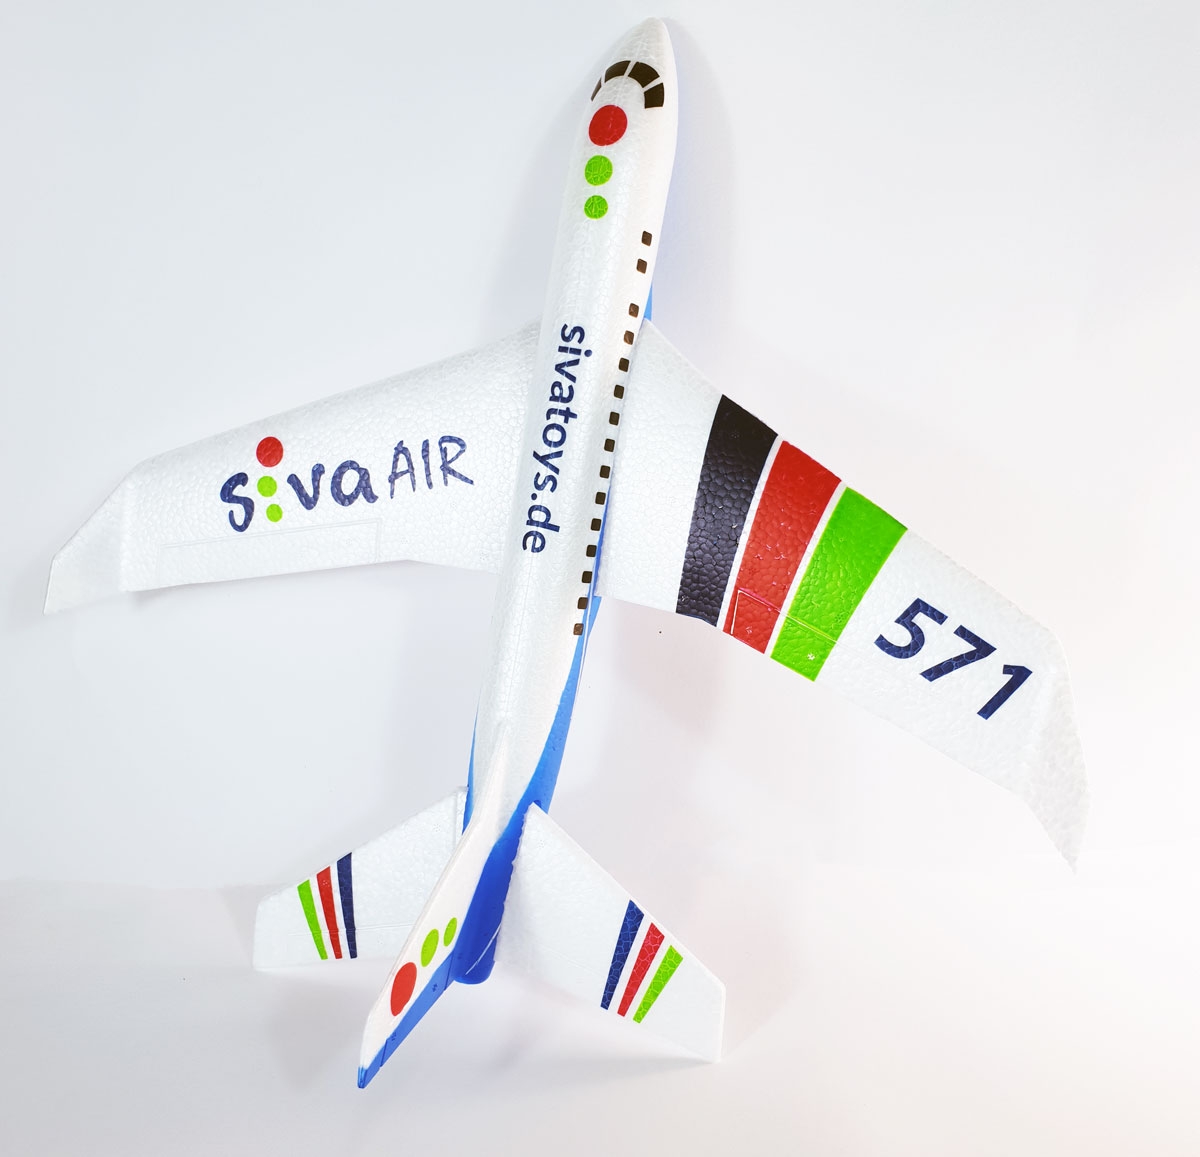 Siva Air 571 blau Wurf Flugzeug Wurfgleiter Flieger Kinderflugzeug Spielzeug 